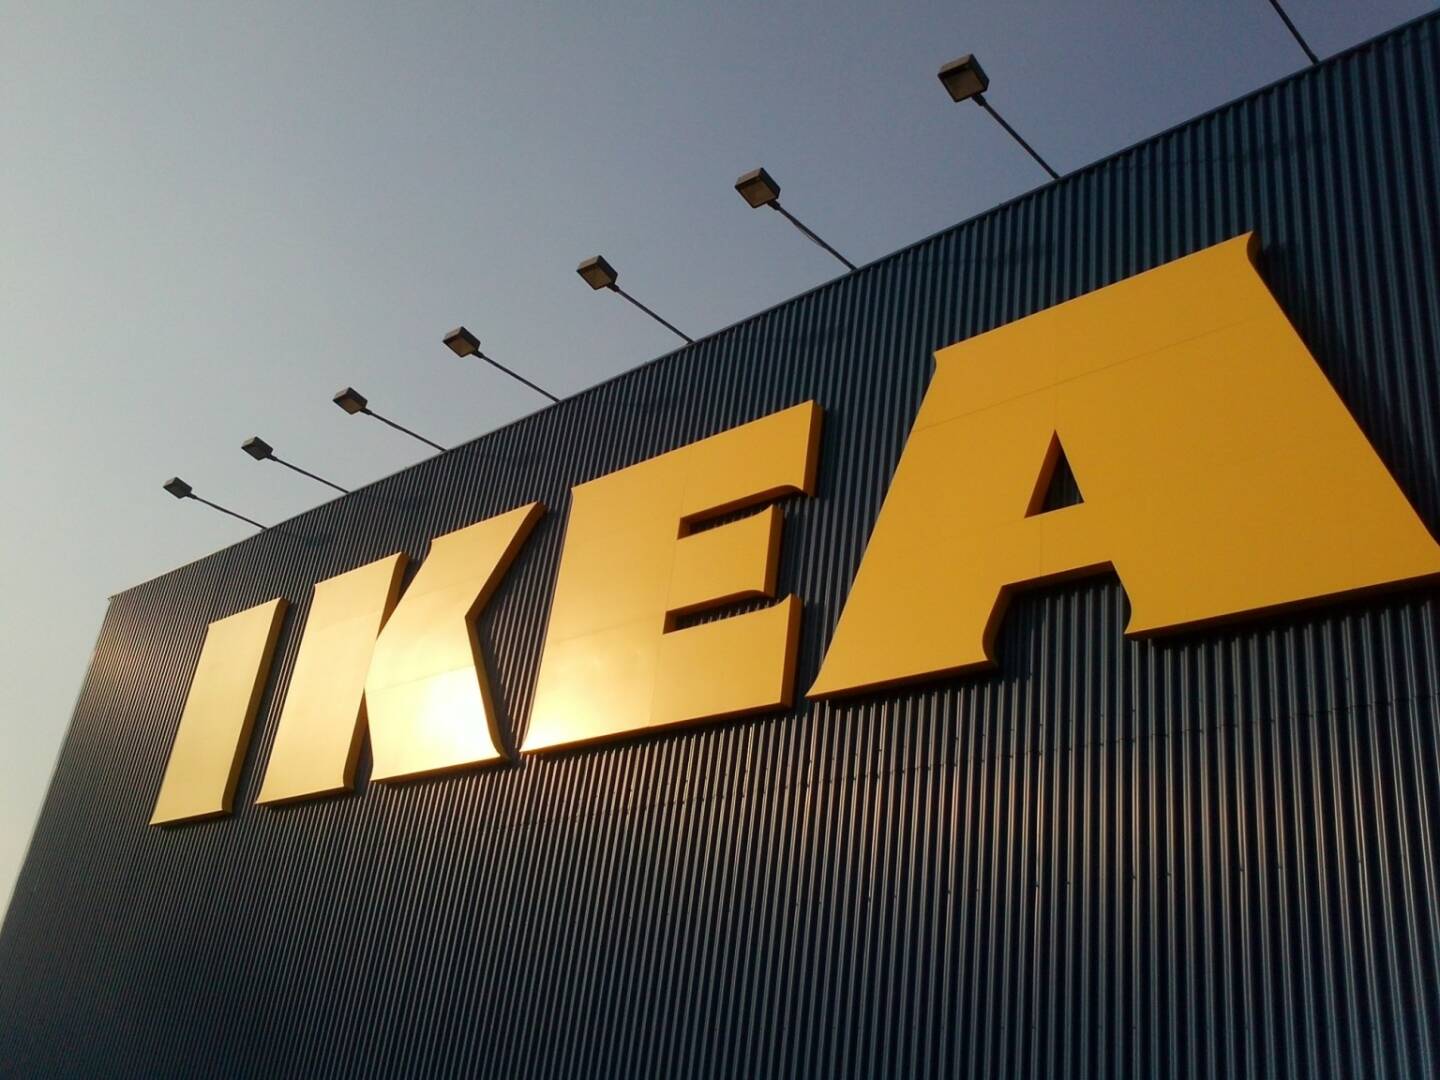 Ikea, Möbel, Schweden - https://de.depositphotos.com/9133522/stock-photo-ikea-sign.html